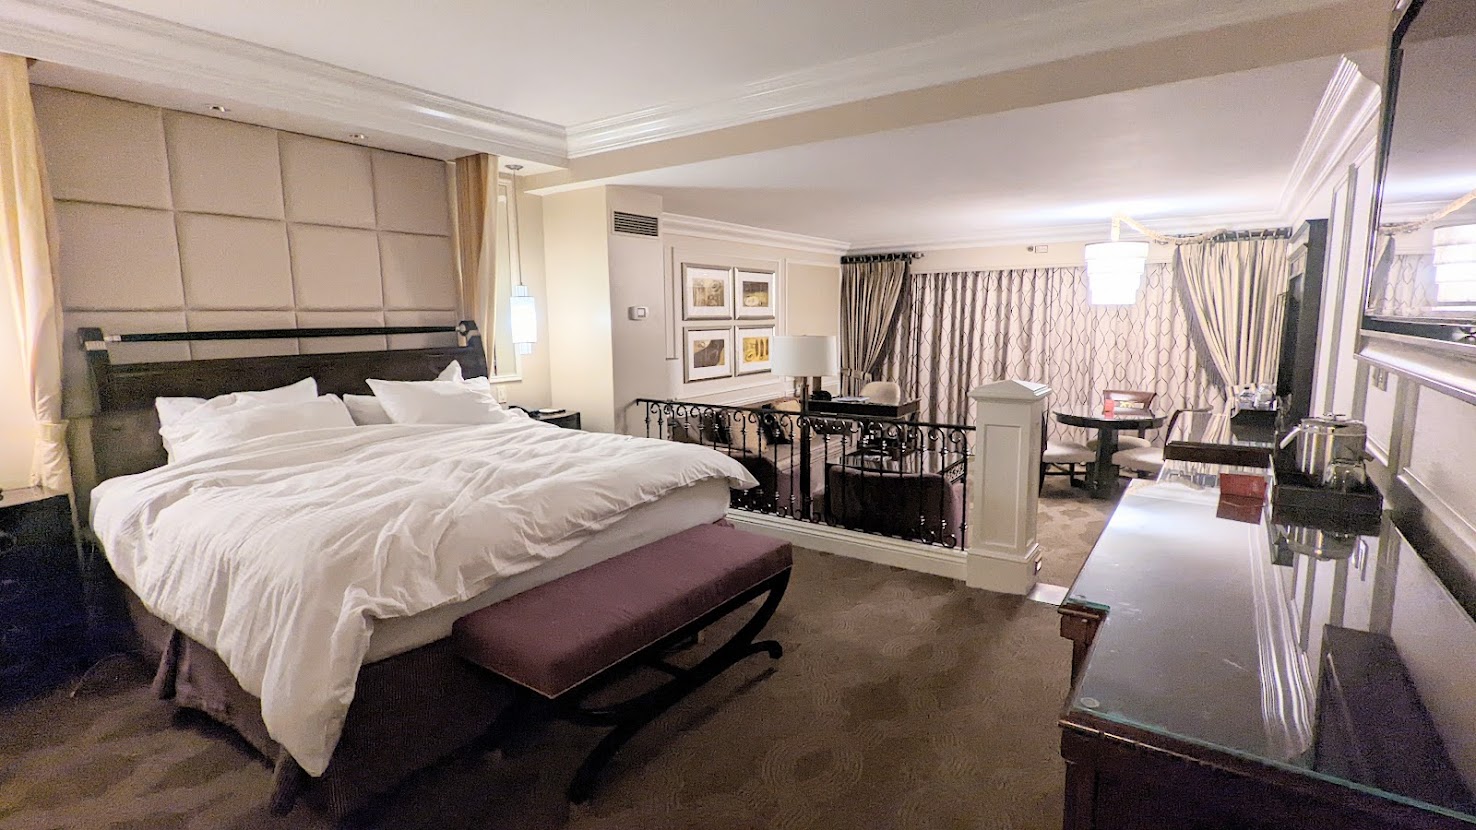 Venetian Hotel Las Vegas Review